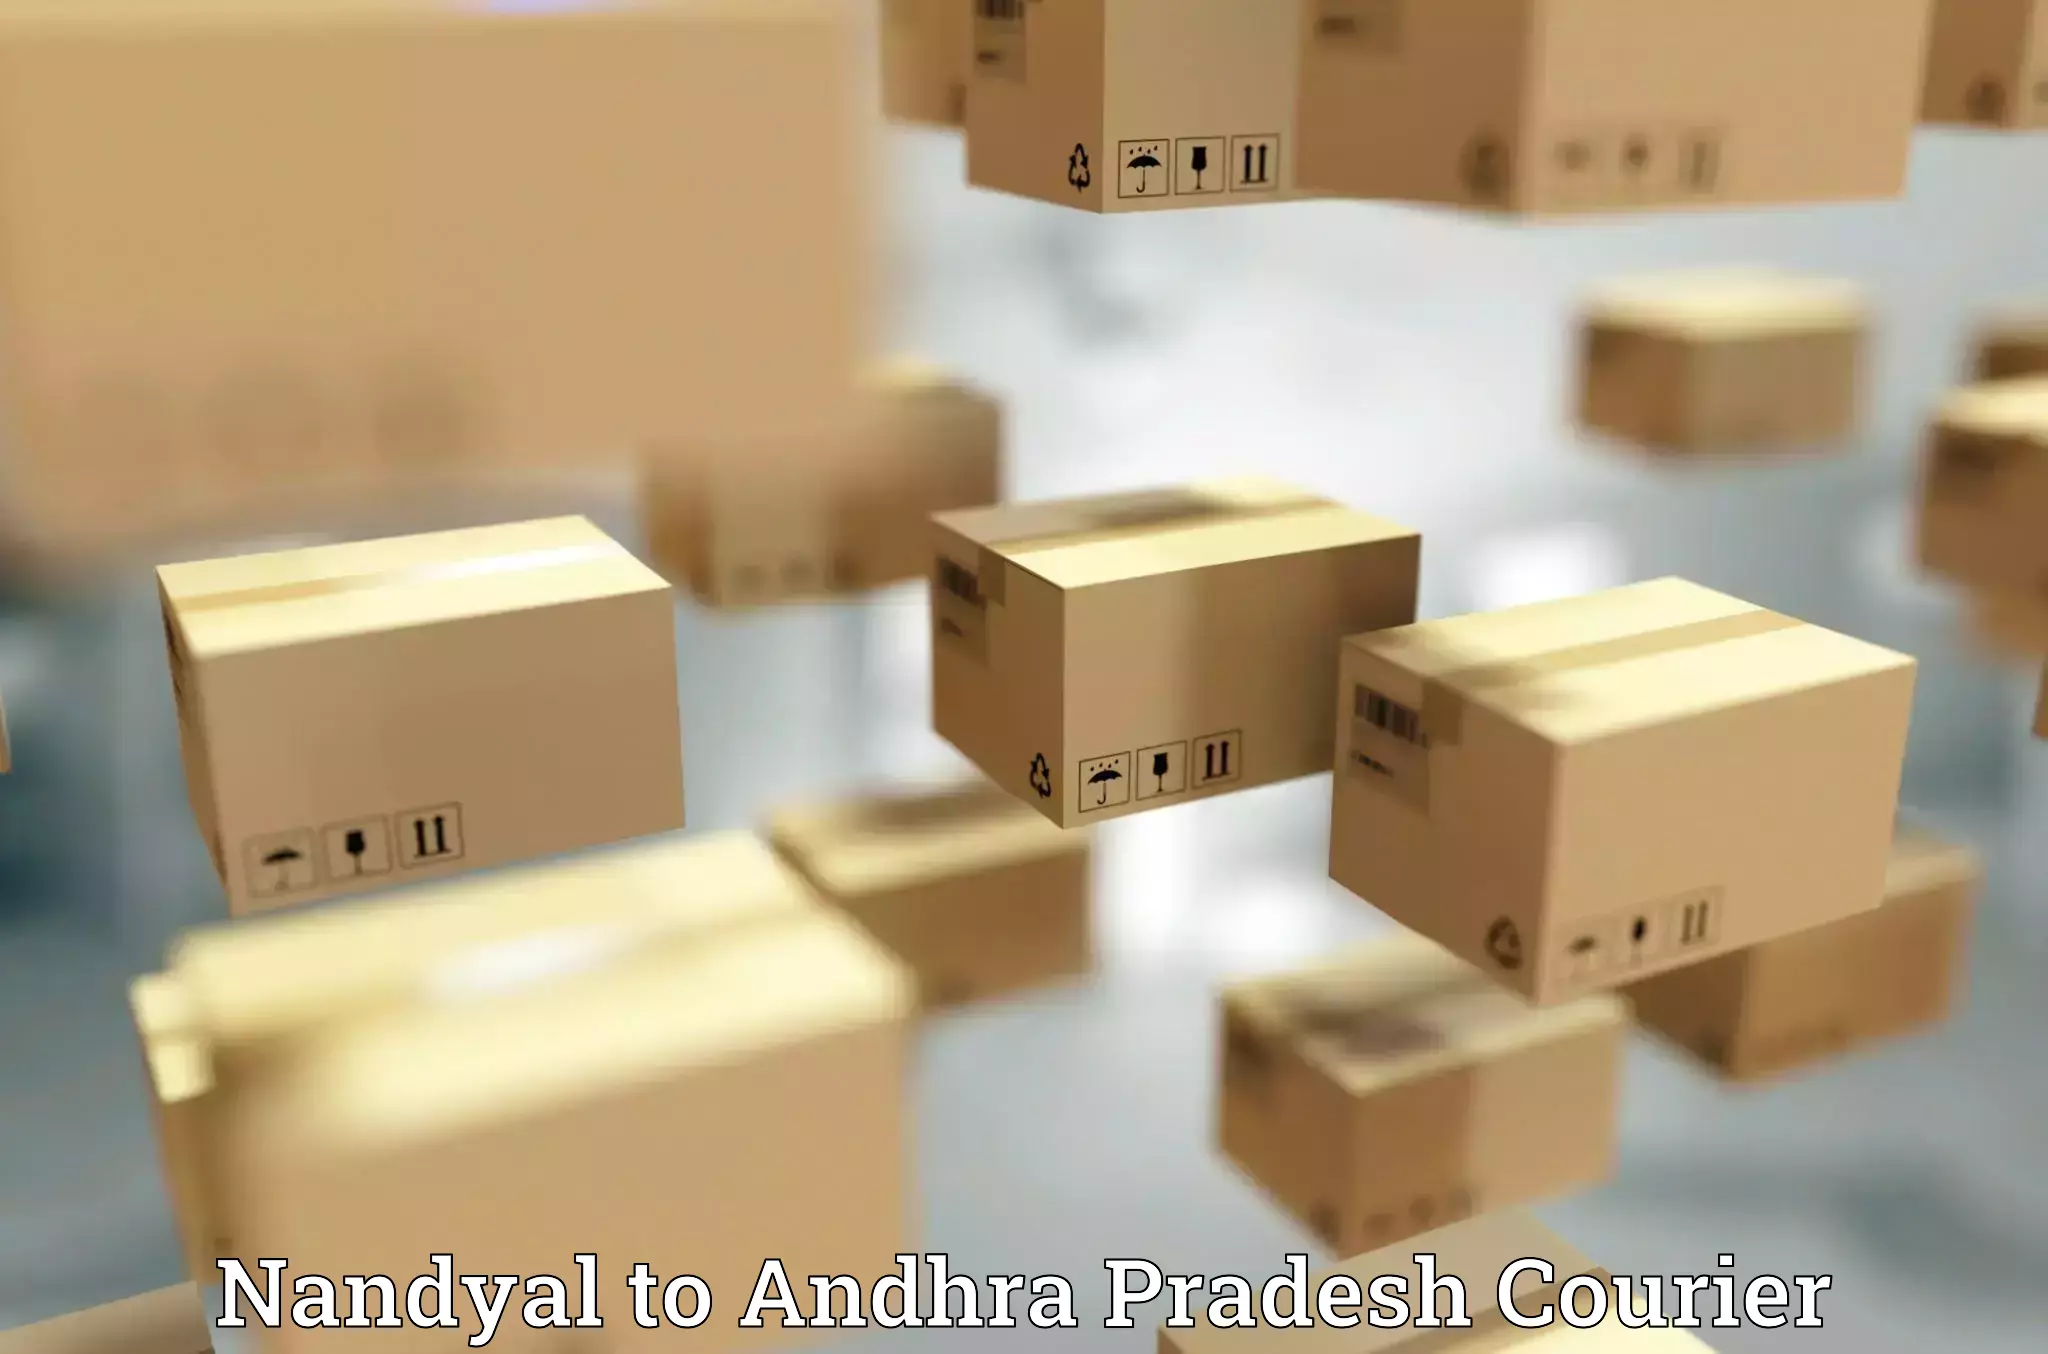 Tech-enabled shipping Nandyal to Gudivada